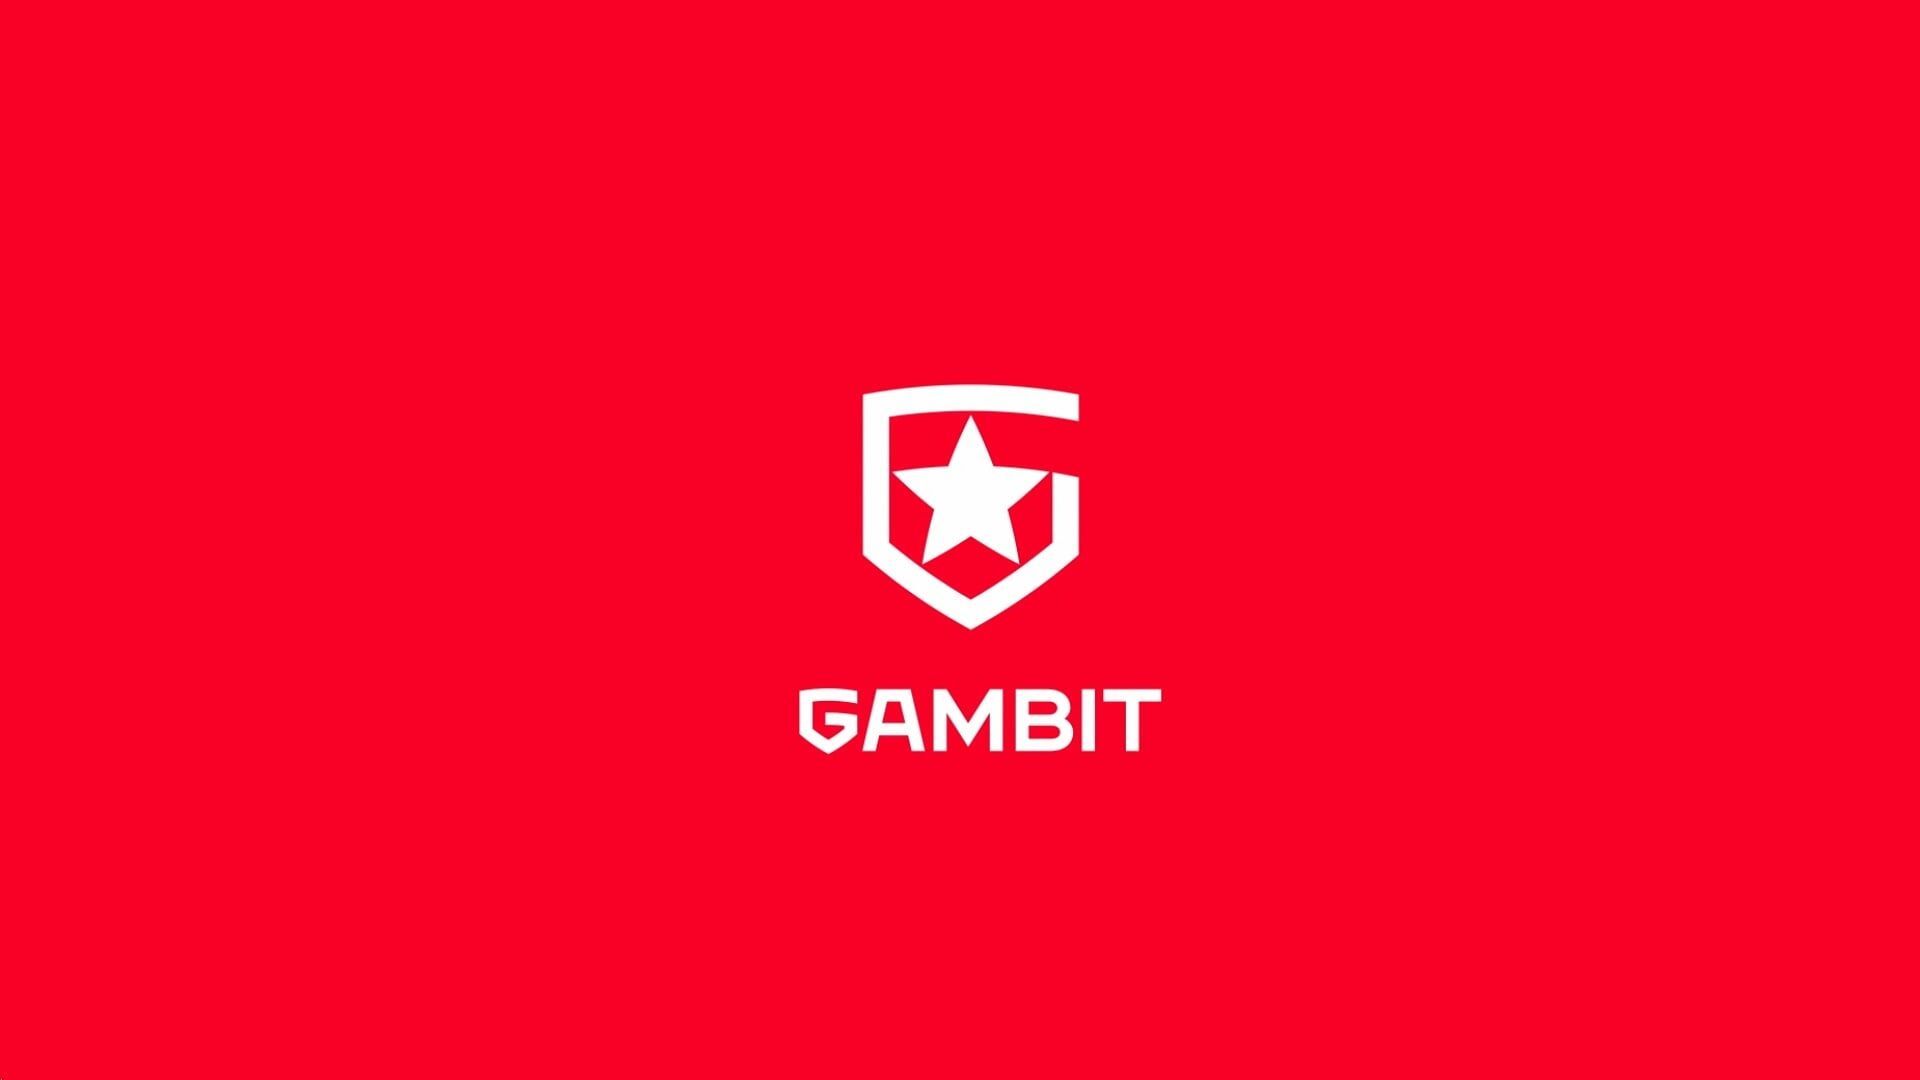 Gambit выступит в сезоне DPC 2021/2022 сразу с двумя составами